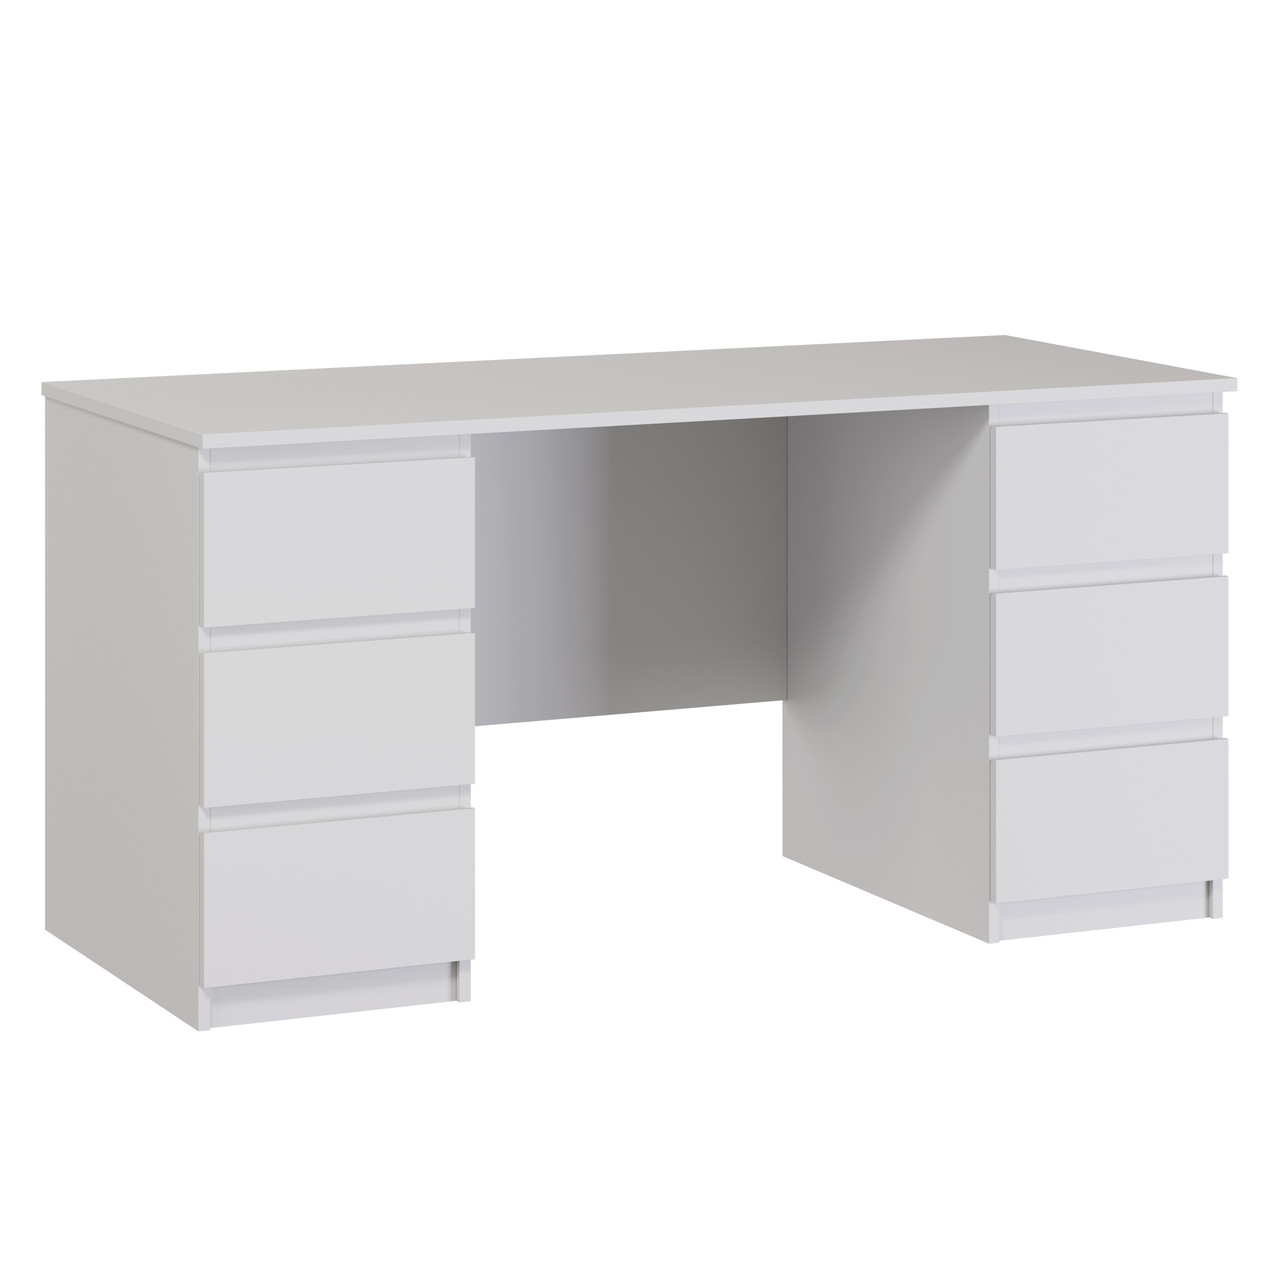 Письменный стол КАСТОР,  6 ящиков 151х65 см, белый